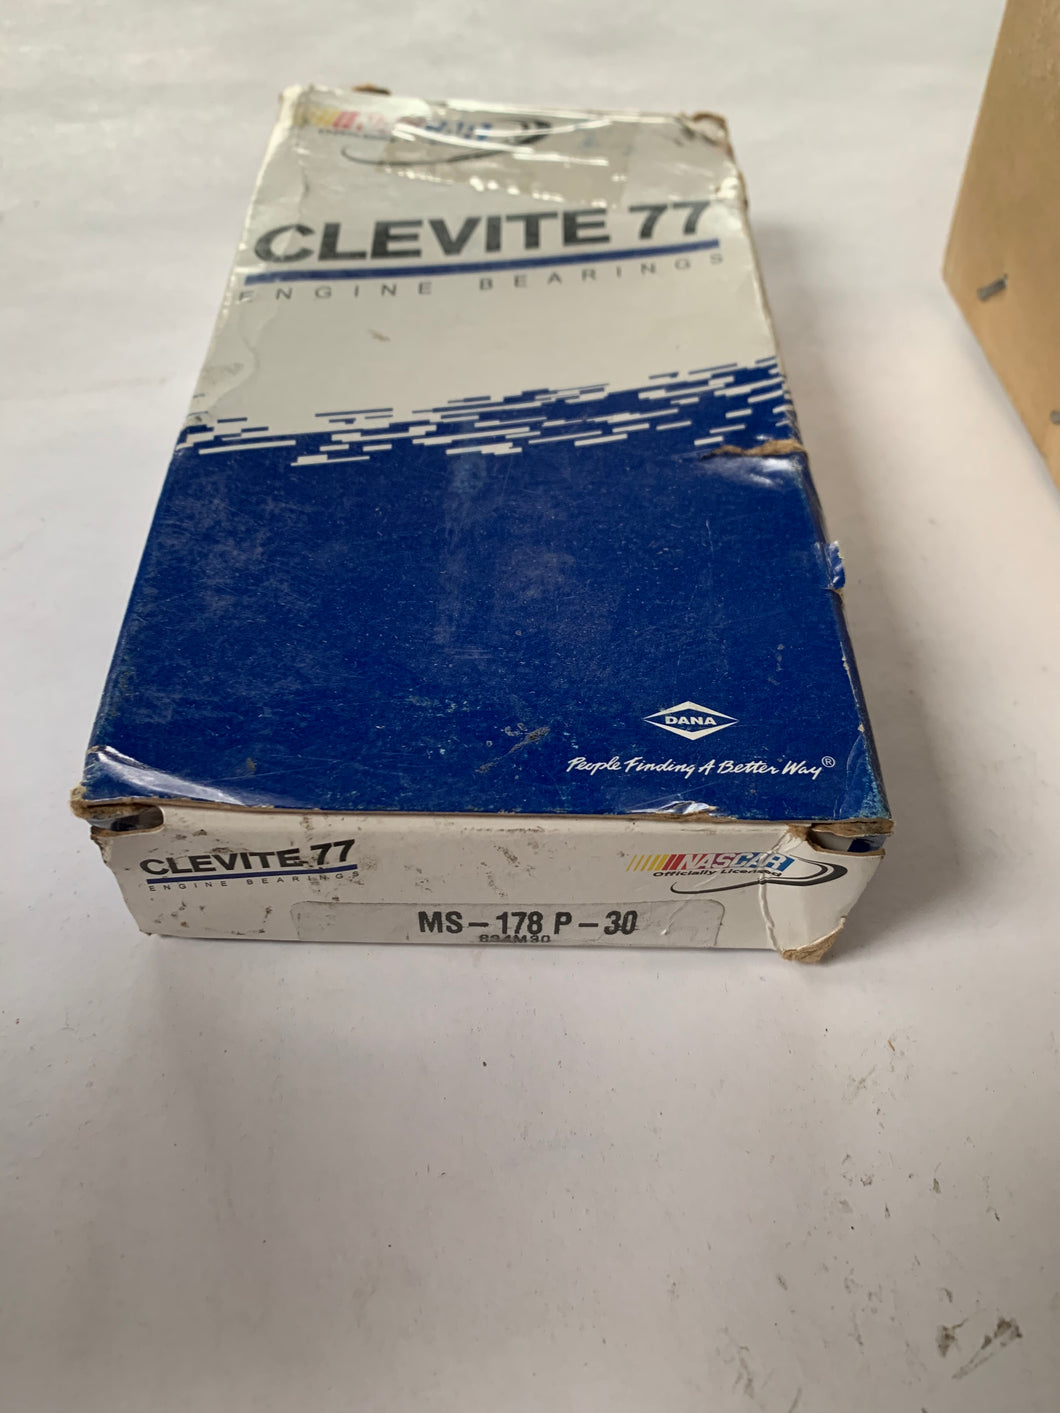 MS-178P-30 - Clevite